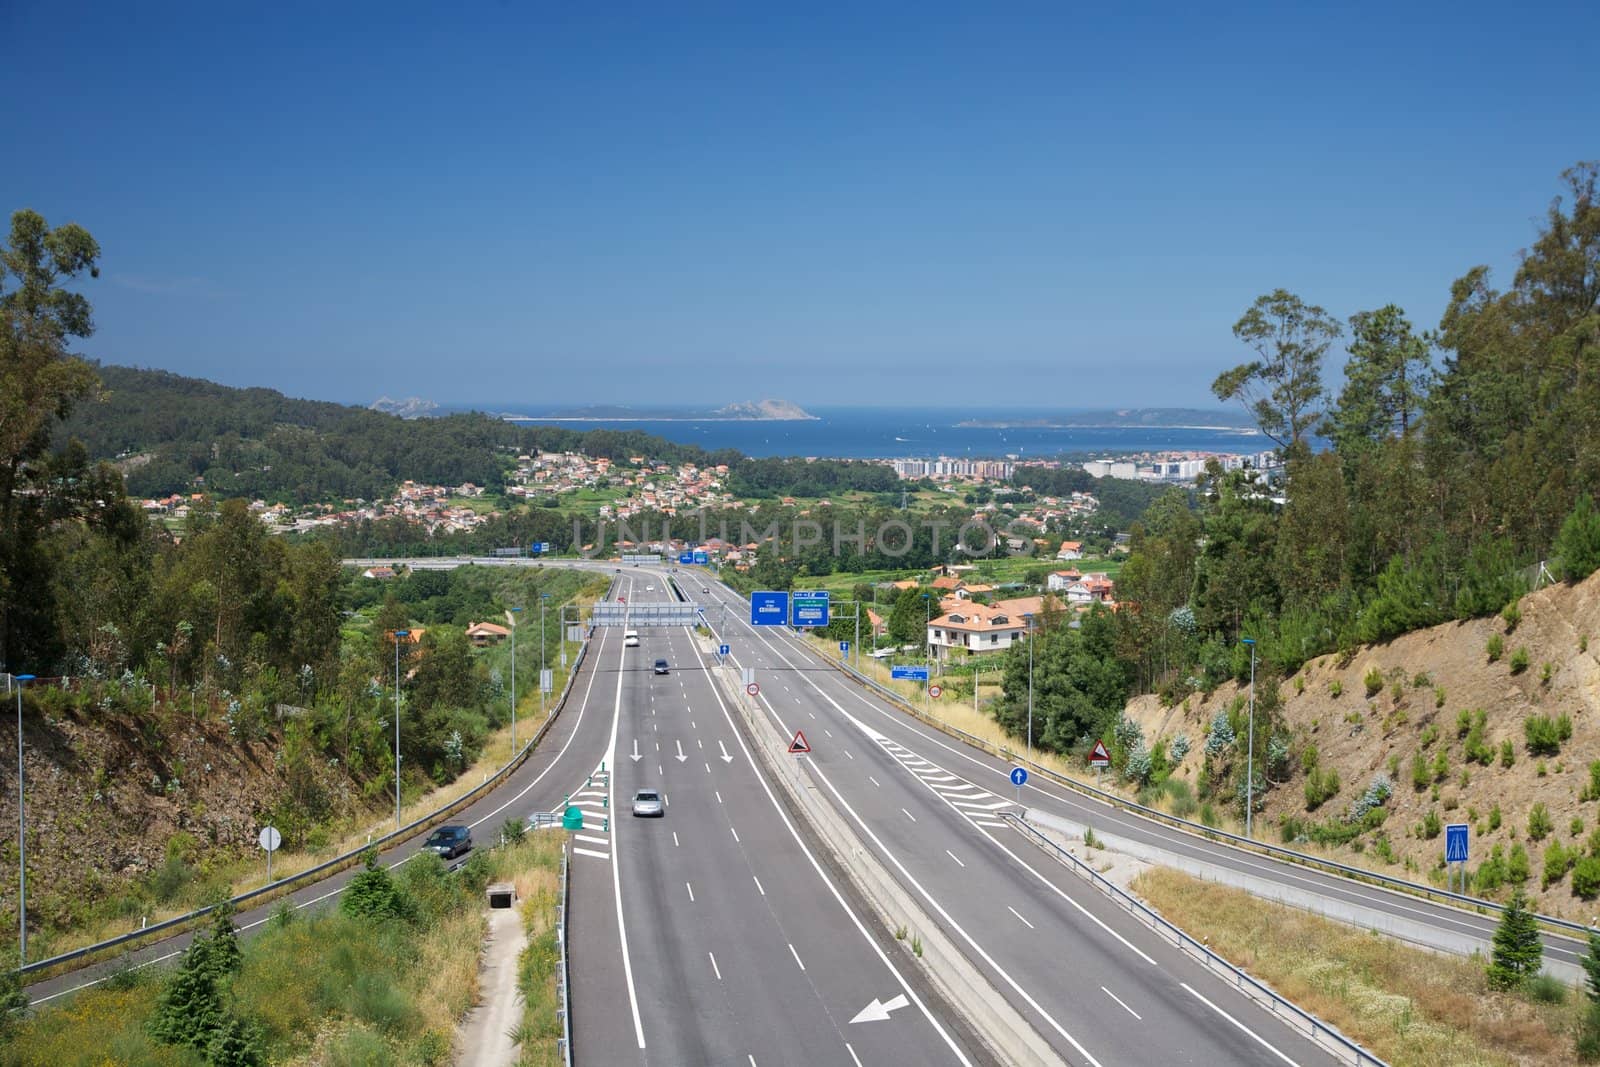 three lanes highway next Vigo city in Galicia Spain